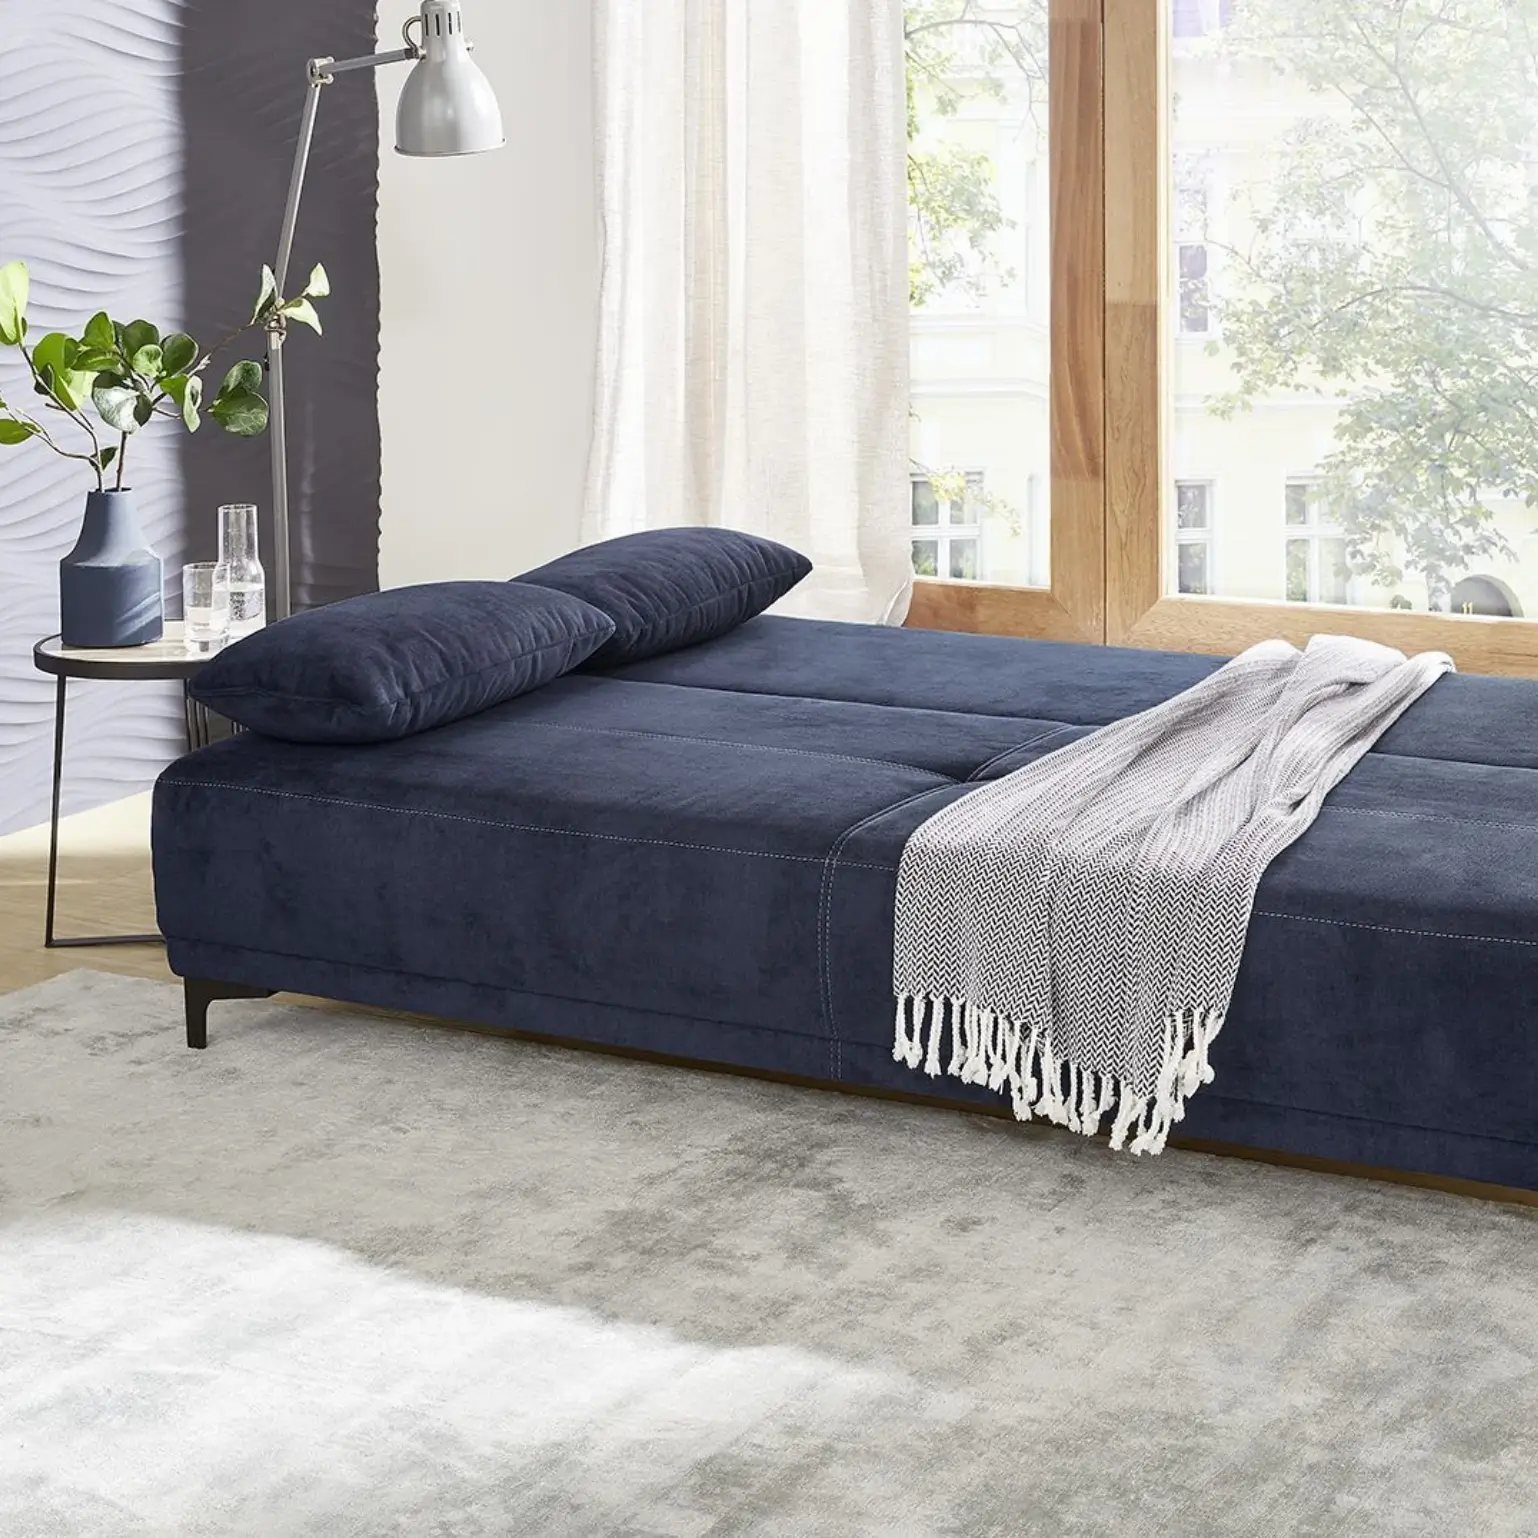 Canapé-lit bleu foncé LUIGI en aspect velours avec coffre de lit intégré et rembourrage en mousse de haute qualité. L/H/P env. 196/81/83 cm